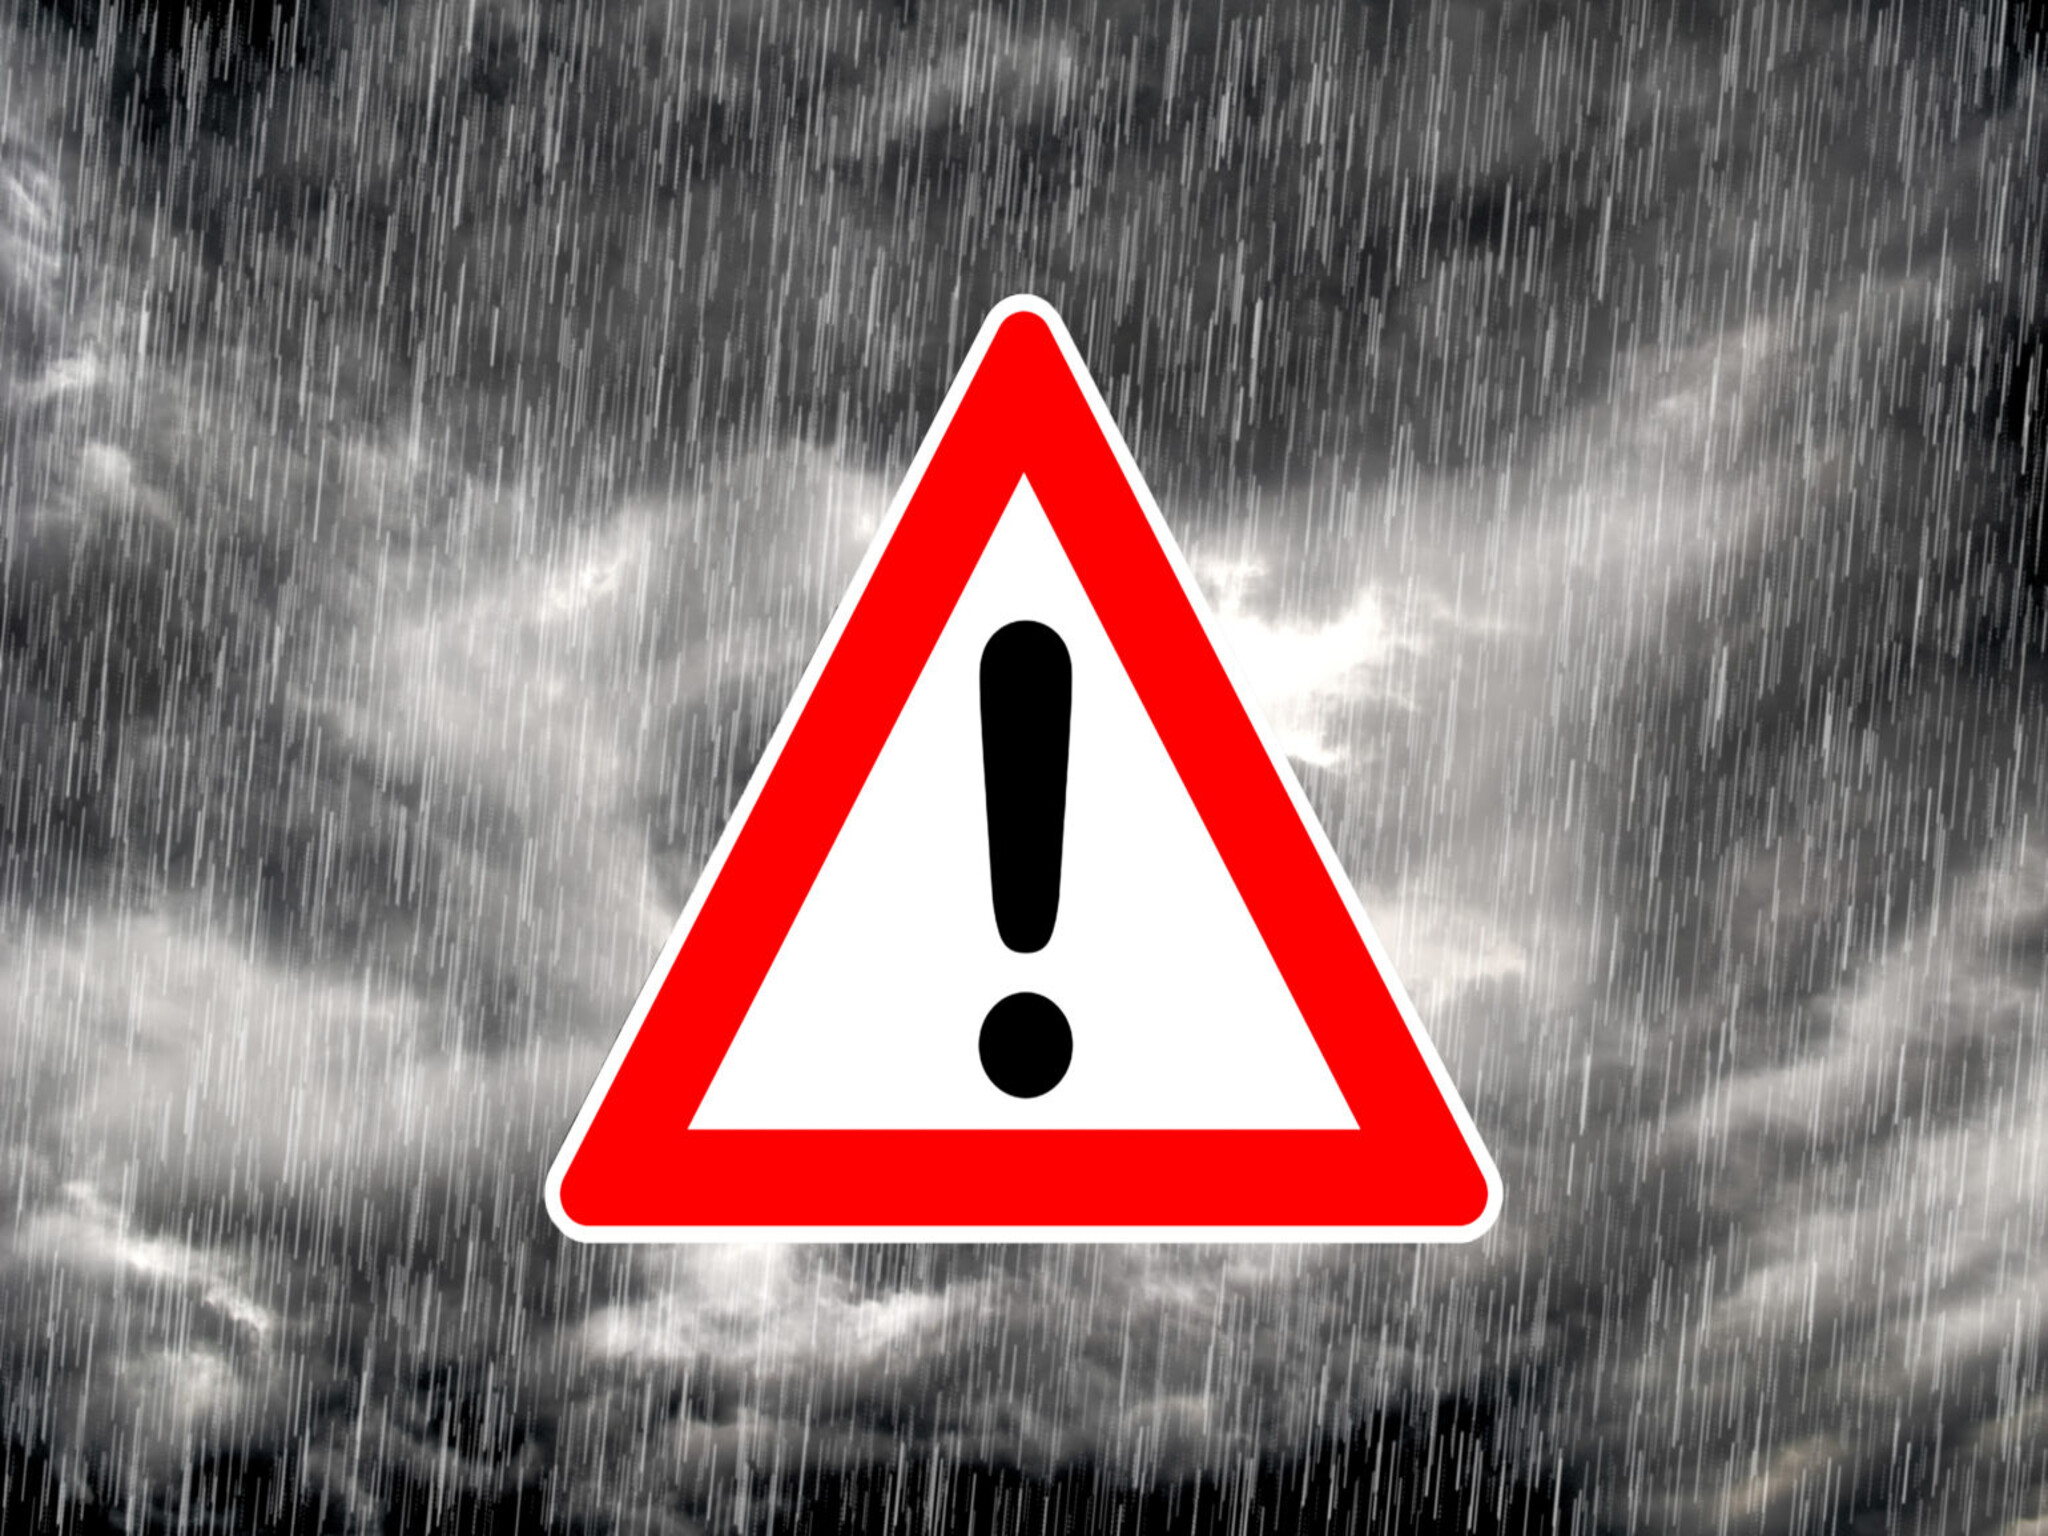 إصدار تحذيرات البقاء في المنزل لسكان الإمارات بسبب الأمطار الغزيرة